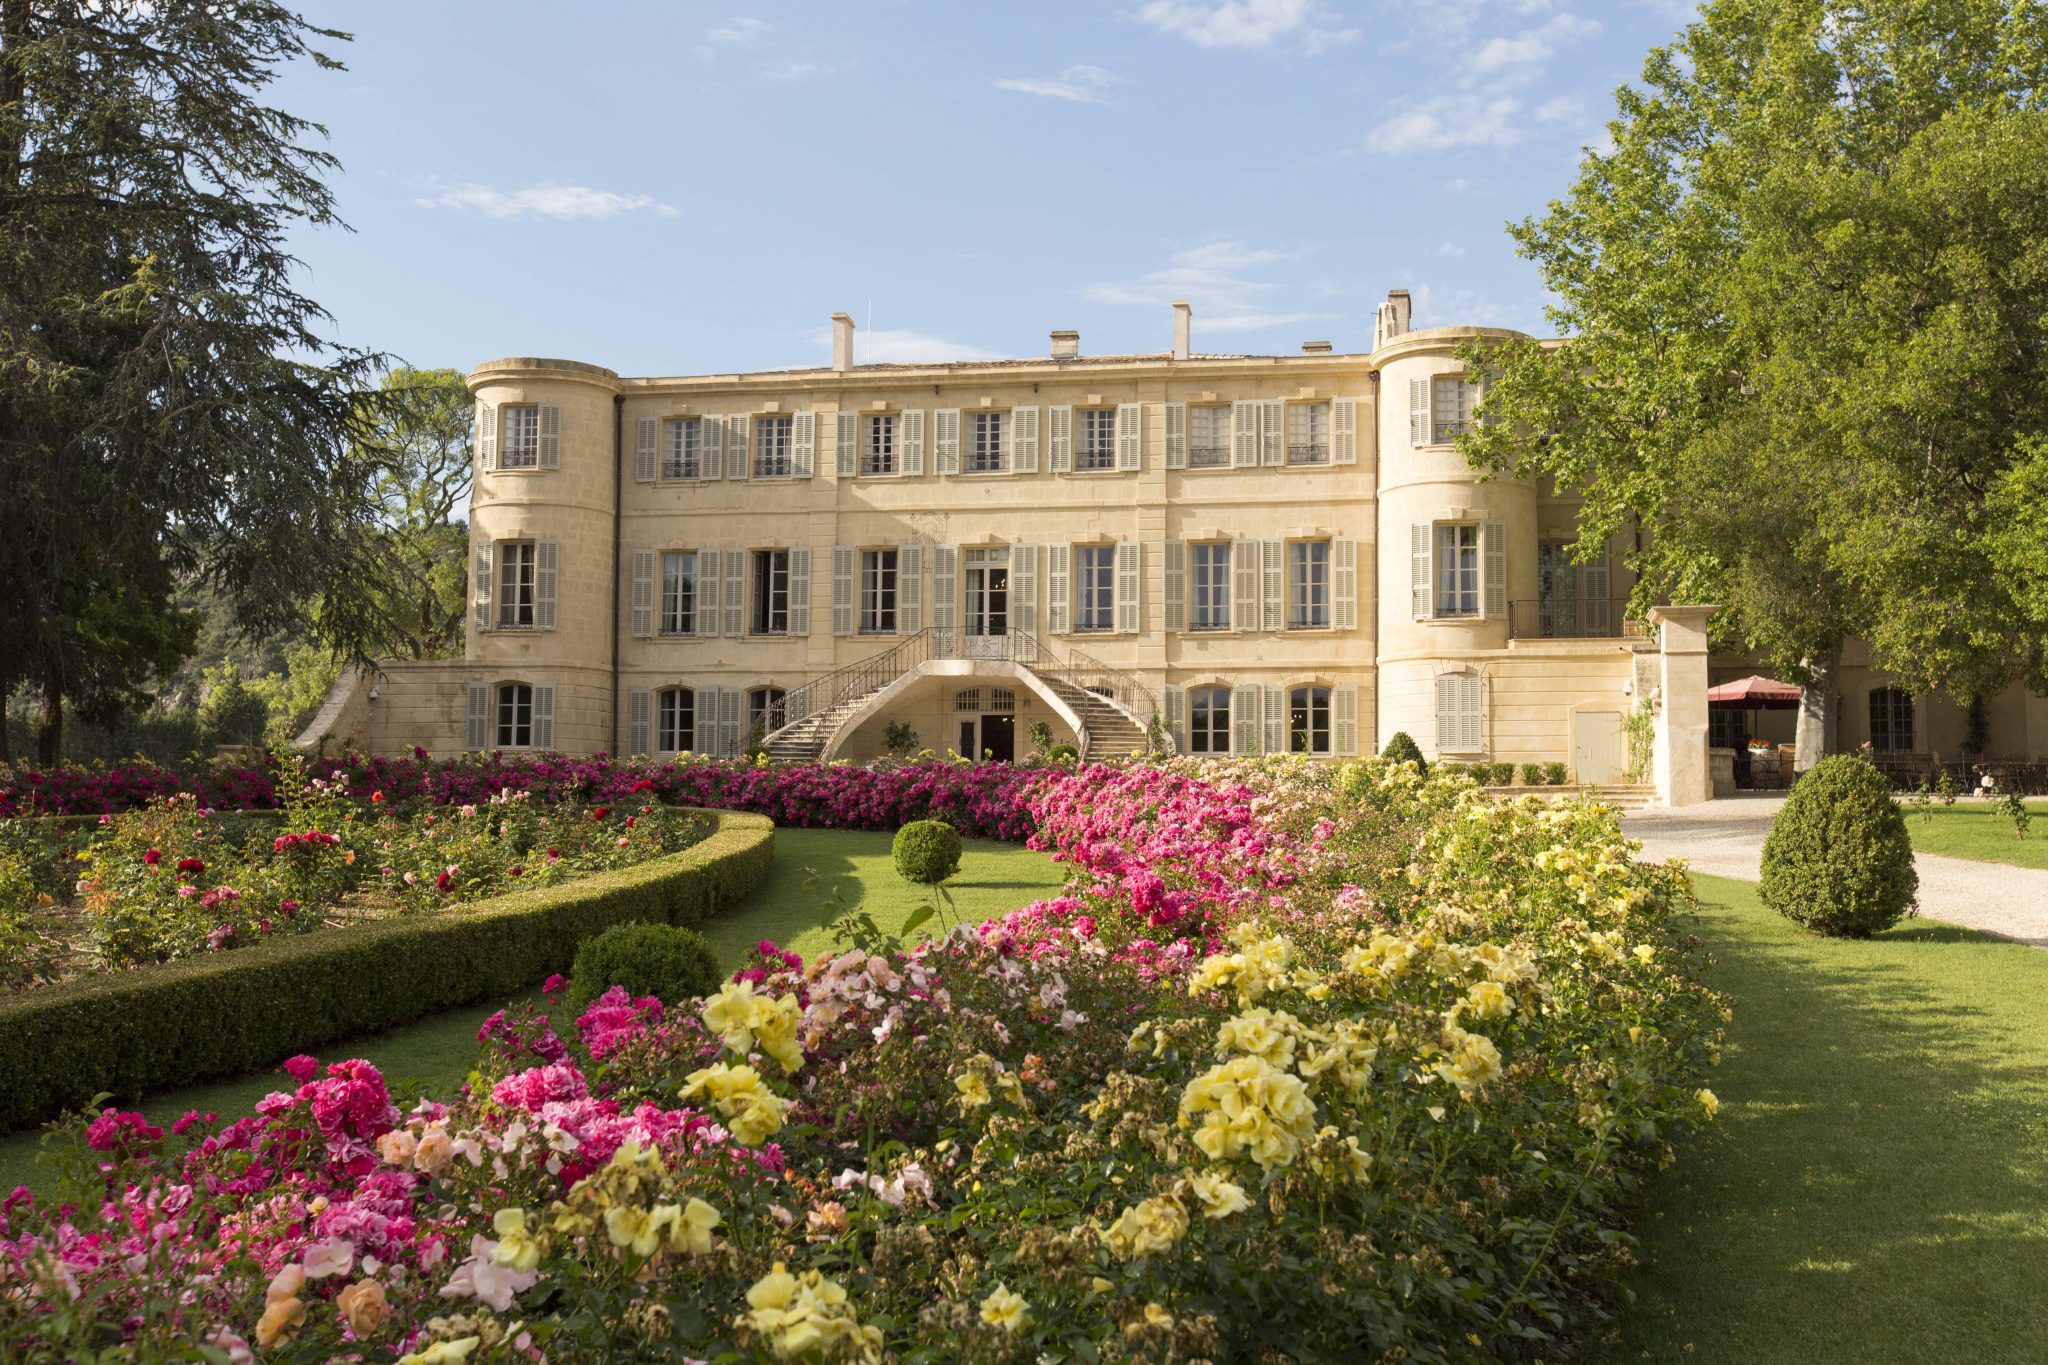 Huile d'Olive Ail 20cl – Château d'Estoublon